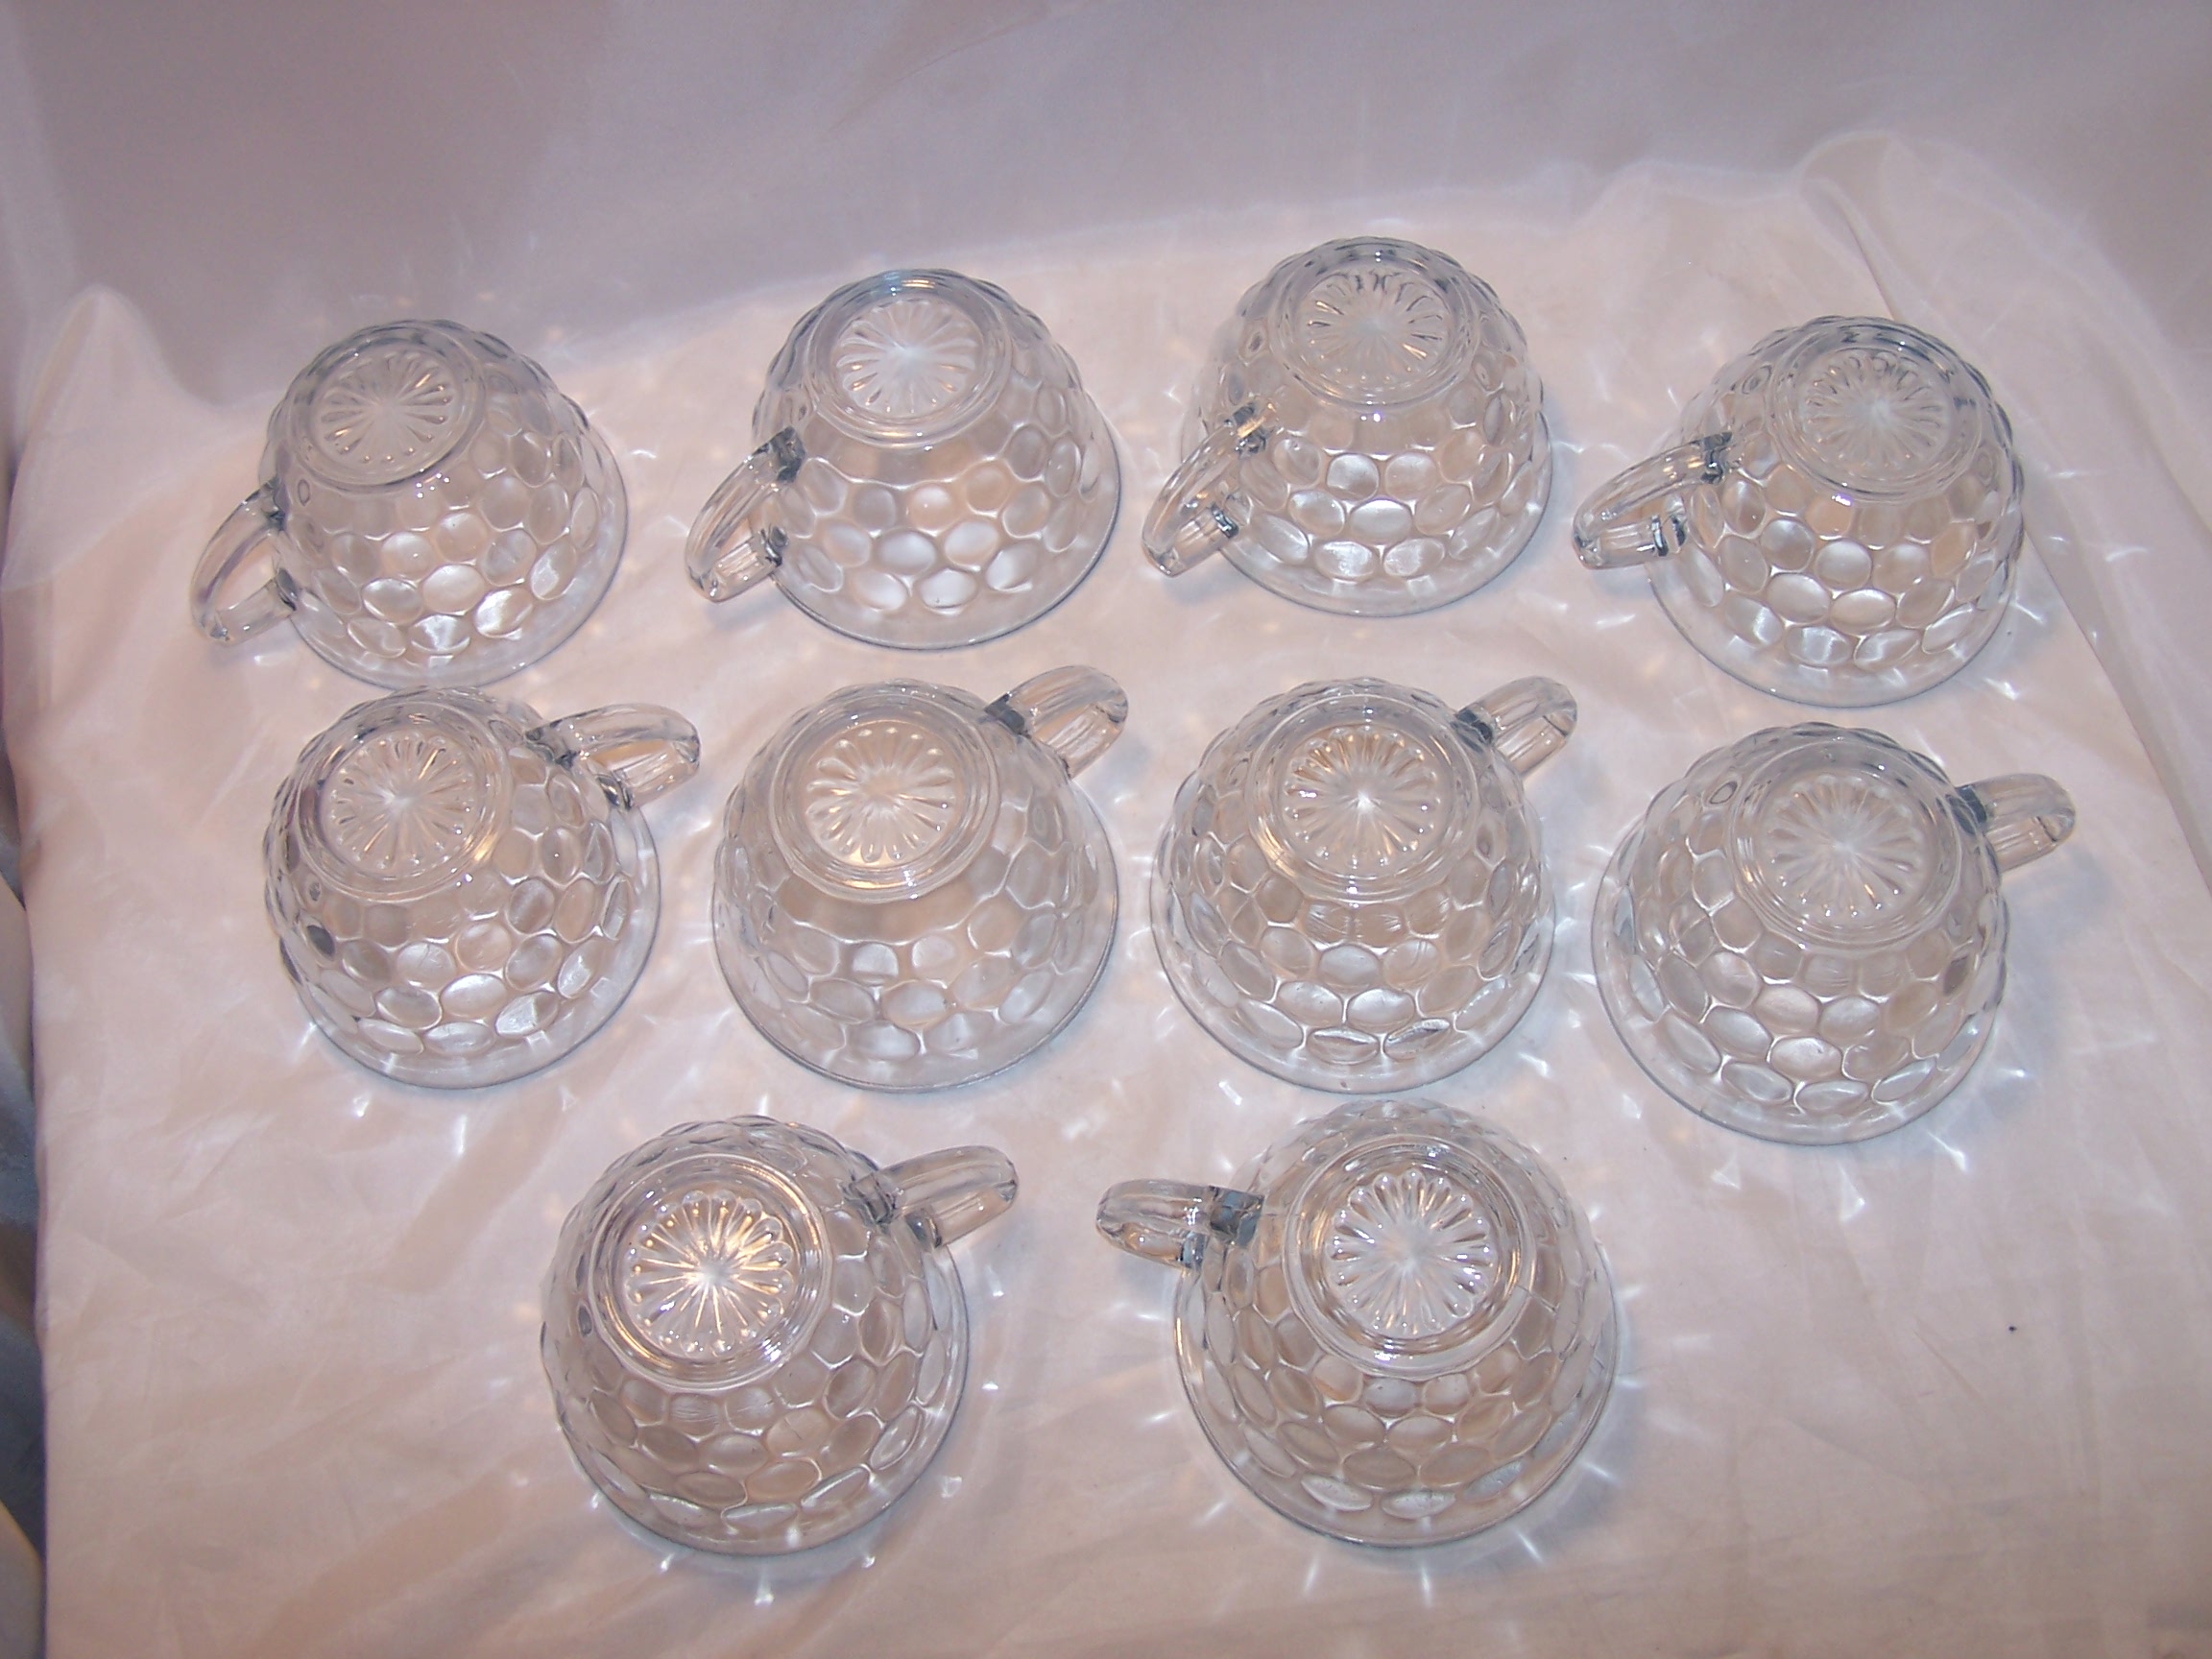 Image 5 of Hobnail Glass Teacup, Saucer Service for 10, Vintage